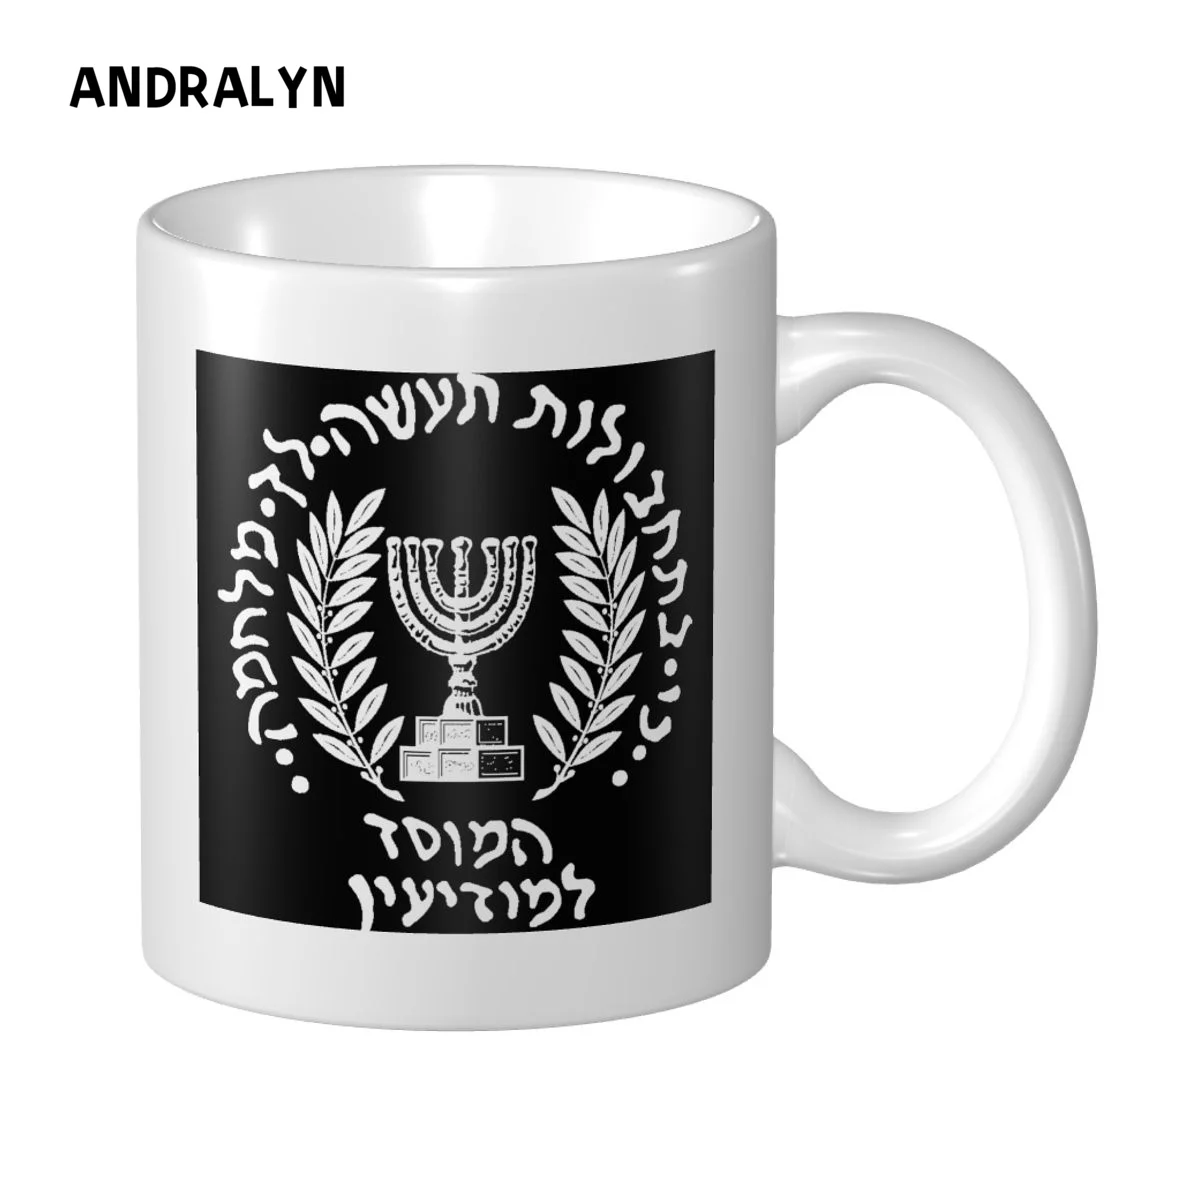 

Кружка с логотипом Mossad, креативная керамическая кружка «сделай сам», кофейные кружки, чашка для молока, подарочная печать картин